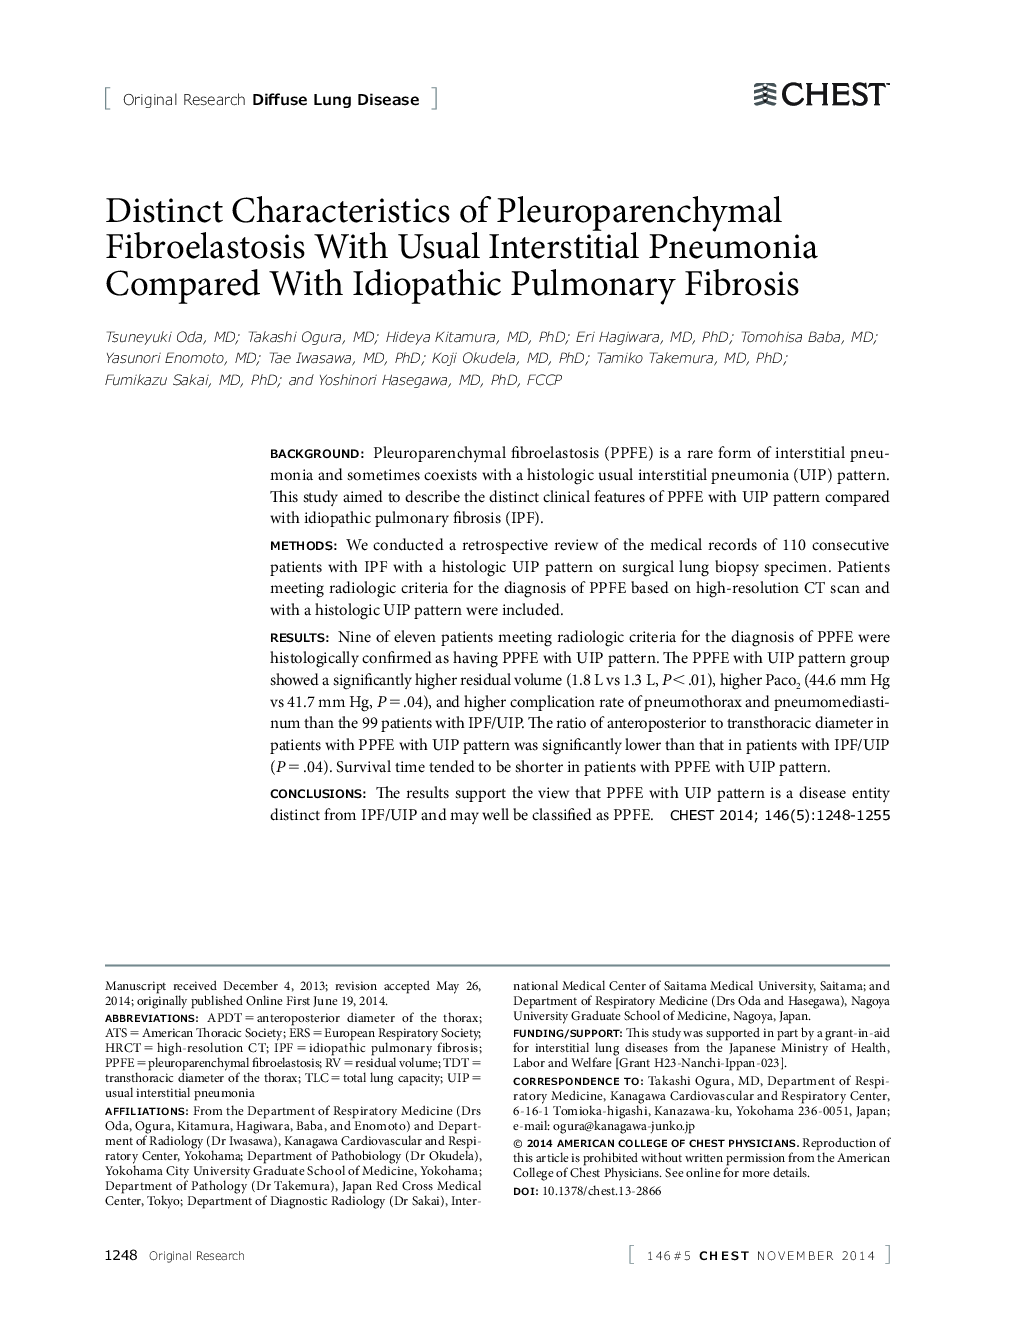 ویژگیهای شایع فیبروالاستوز پیلوروپارنشیمال با شایع پانکونیت بینی در مقایسه با فیبروز ریوی ایدیوپاتیک 